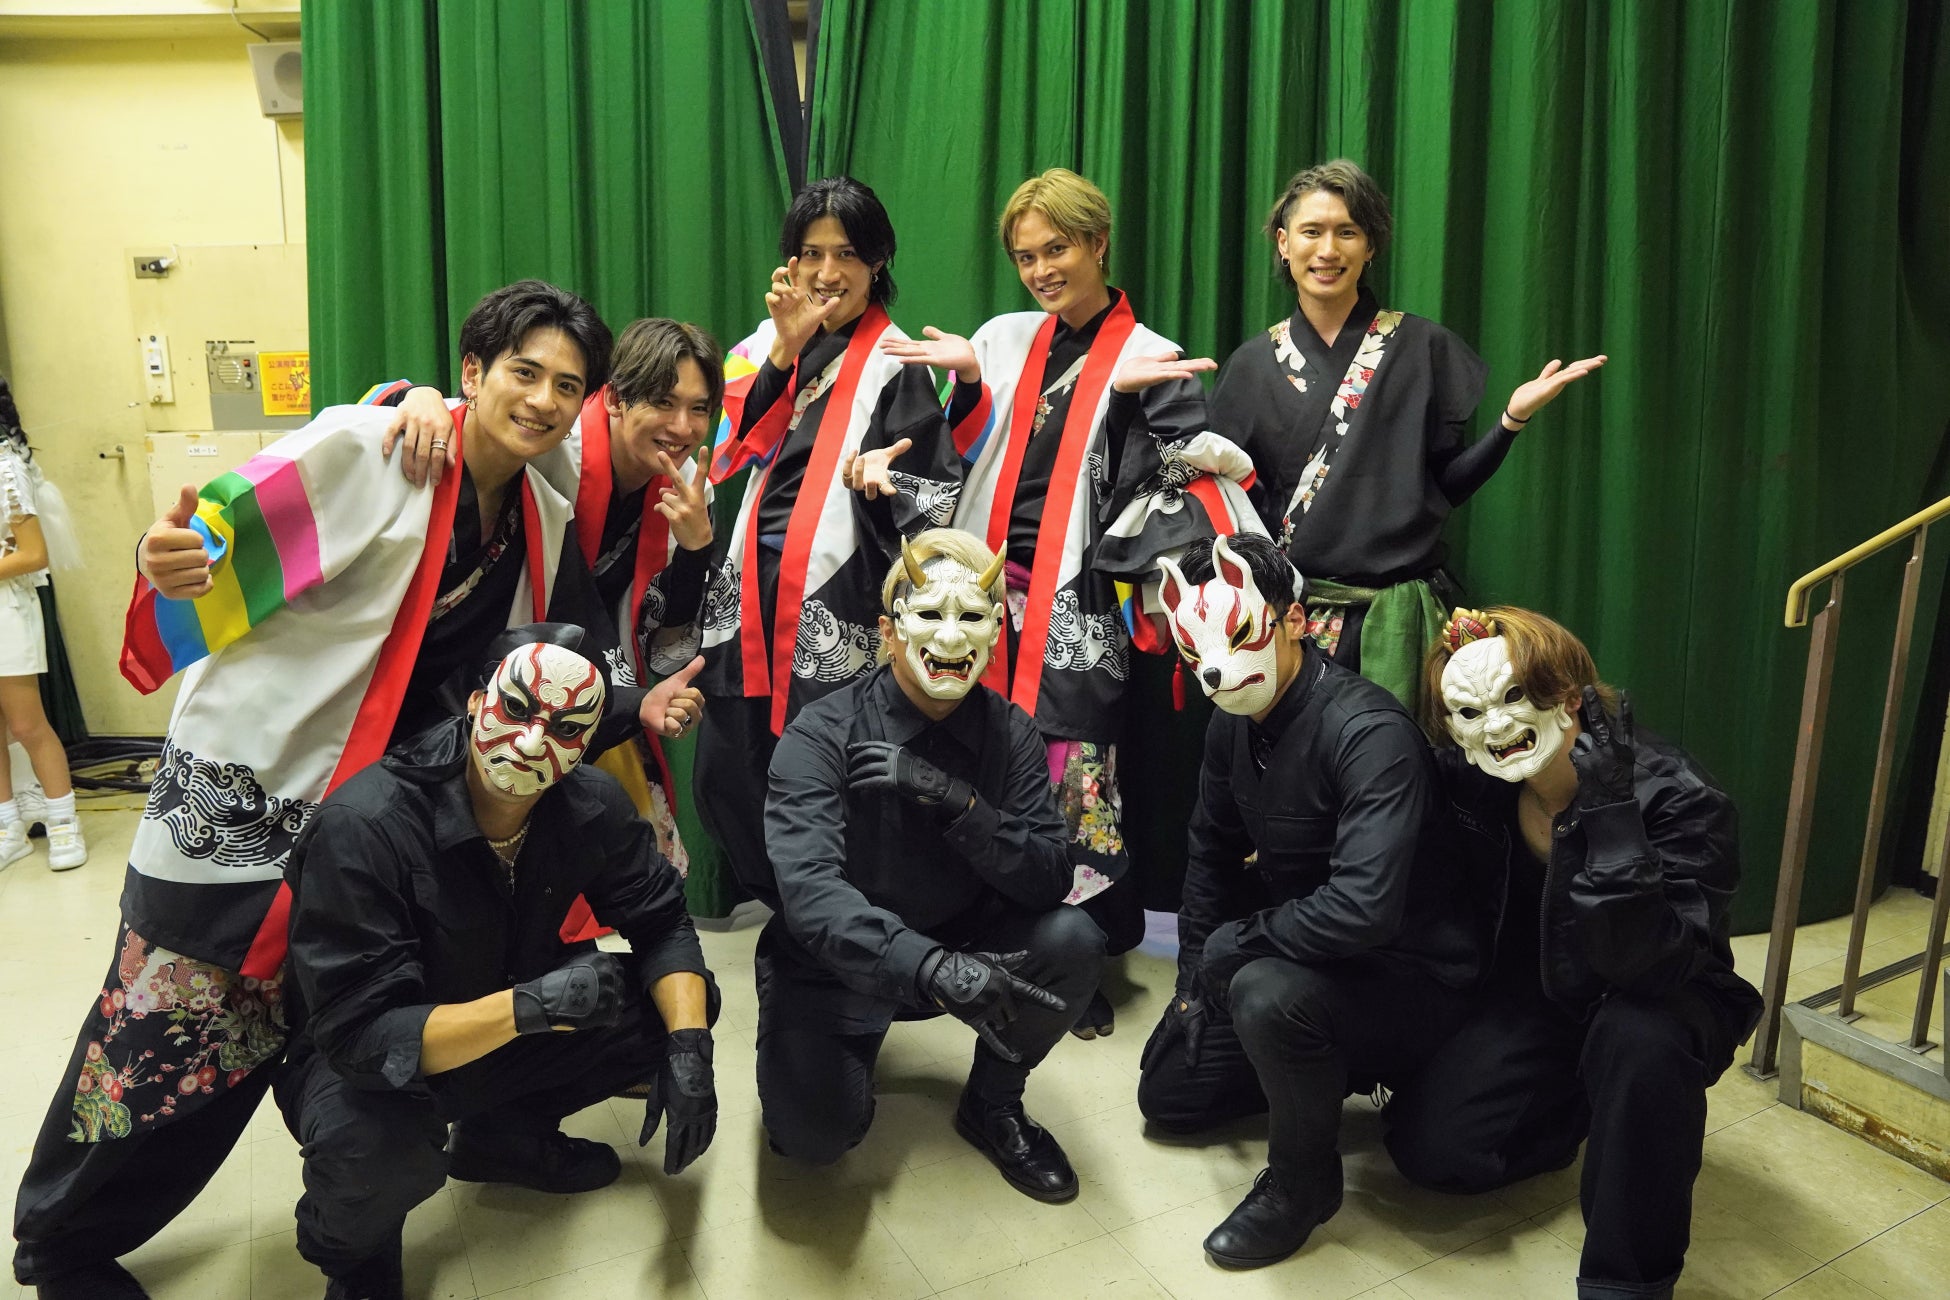 謎のお面ダンステロリスト集団O-MENZが7th ANNIVERSARY TOUR 『超G.U.M祭』ファイナル大阪城野外音楽堂にオープニングアクトとして出演翌日には大阪城公園で路上ライブも開催